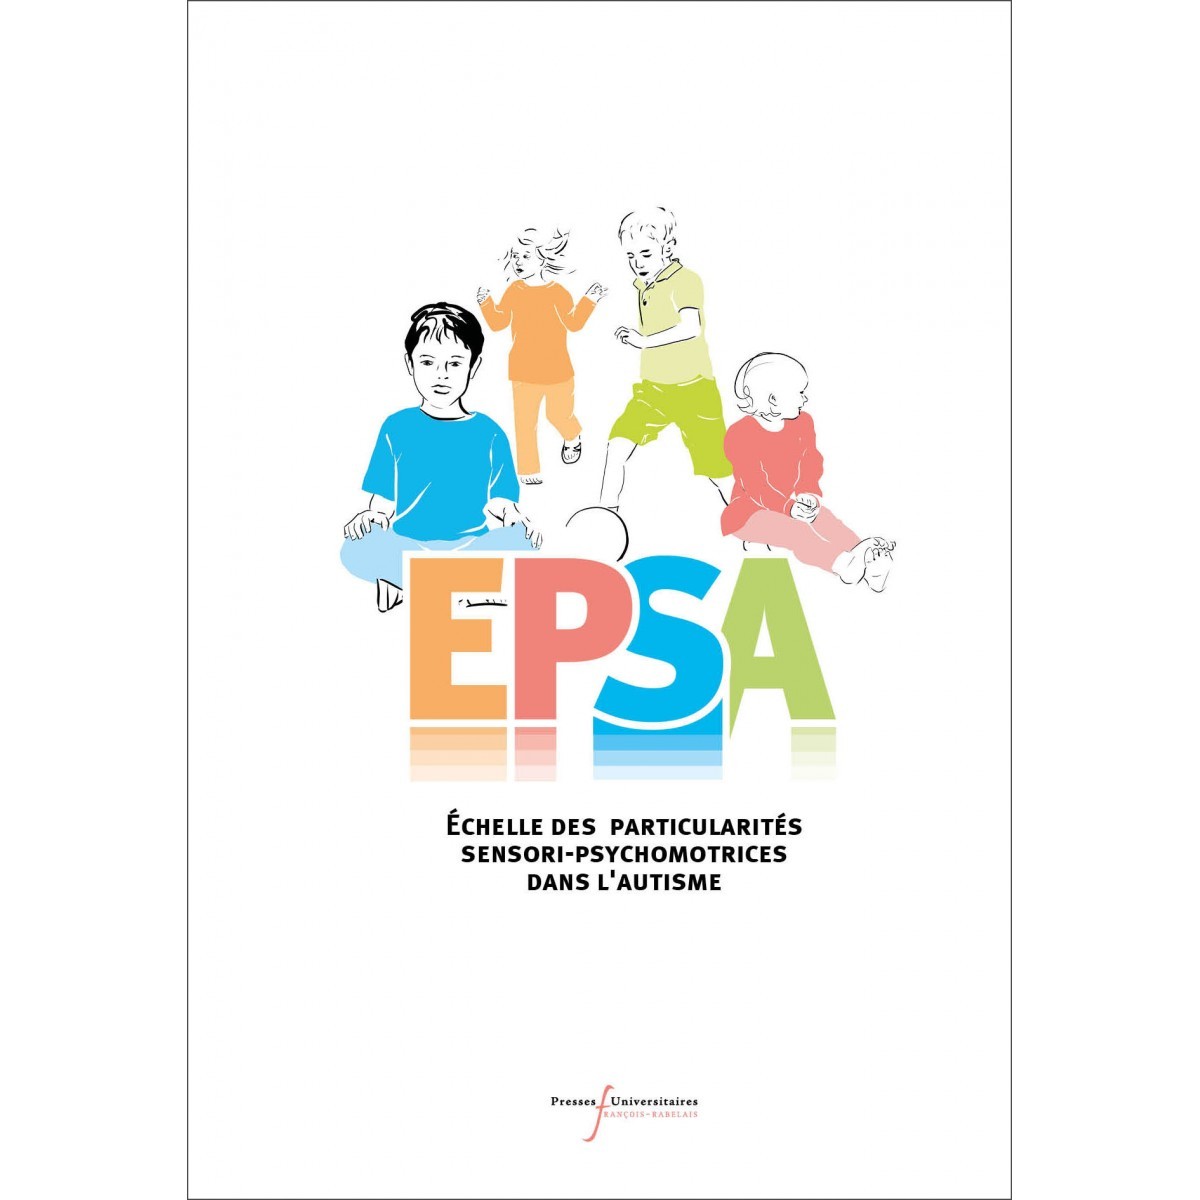 EPSA : échelle des particularités sensori-psychomotrices dans l'autisme